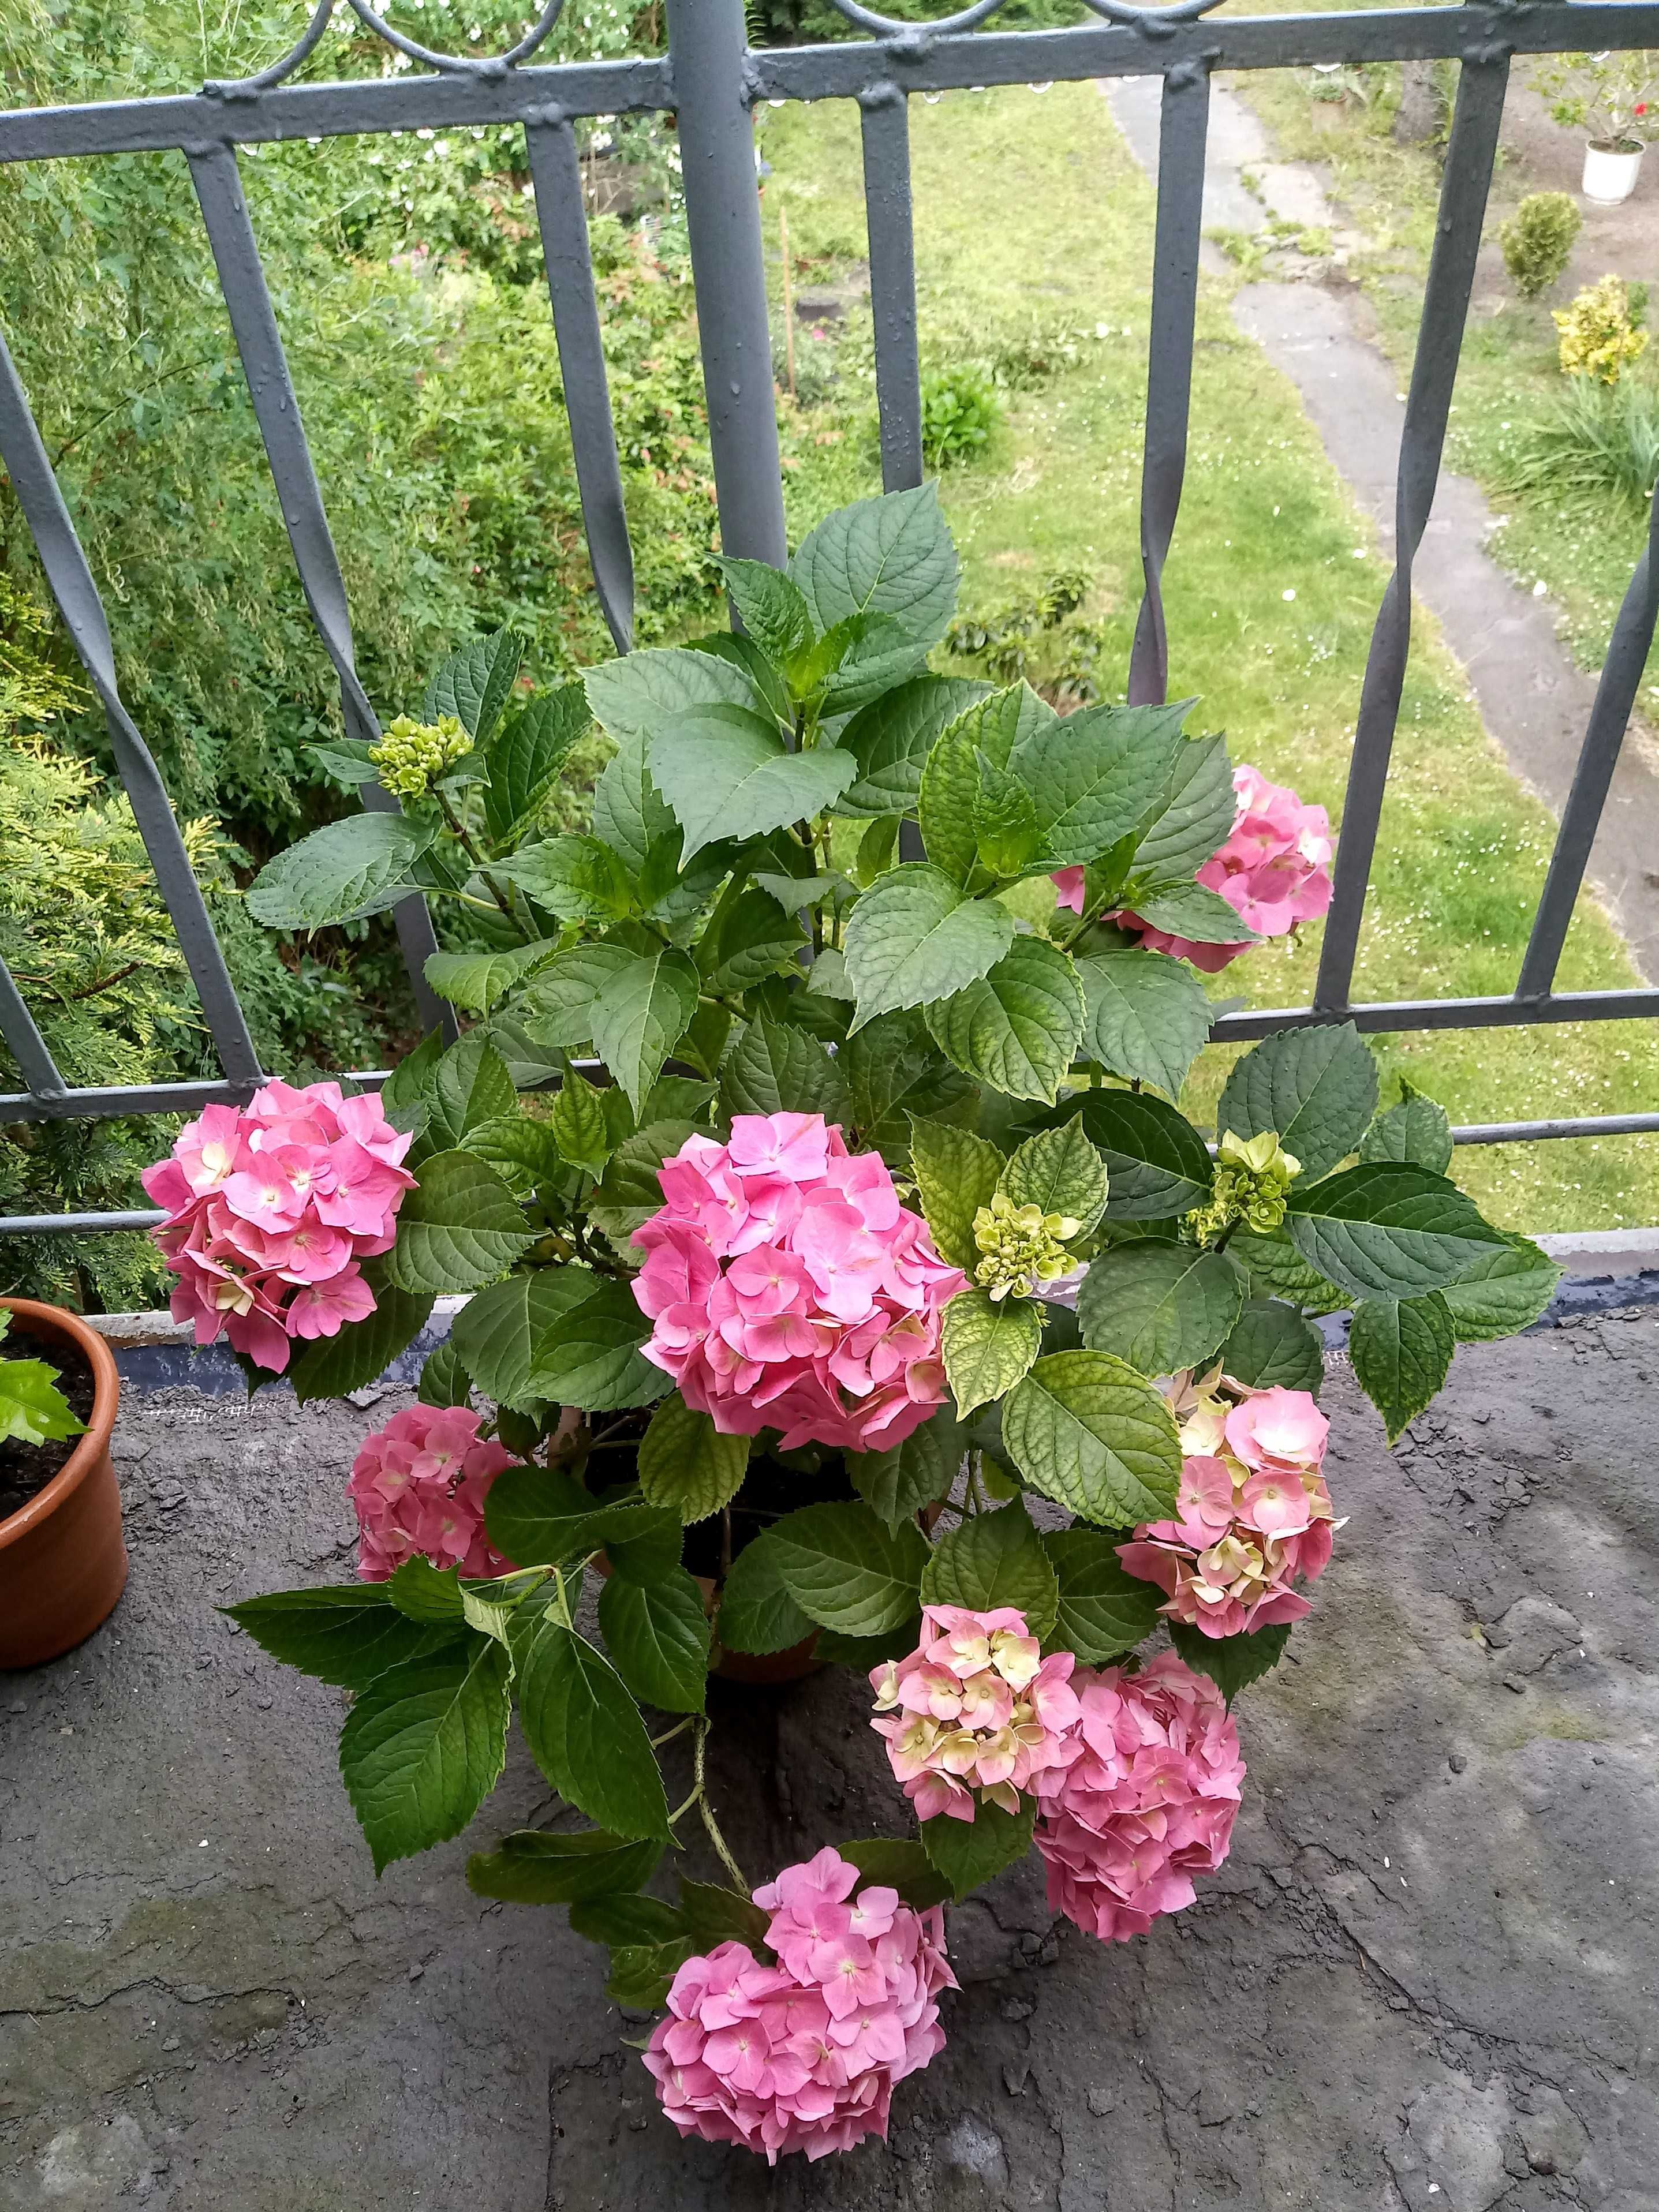 Hortensja ogrodowa różowy kwiat w doniczkach z pąkami.